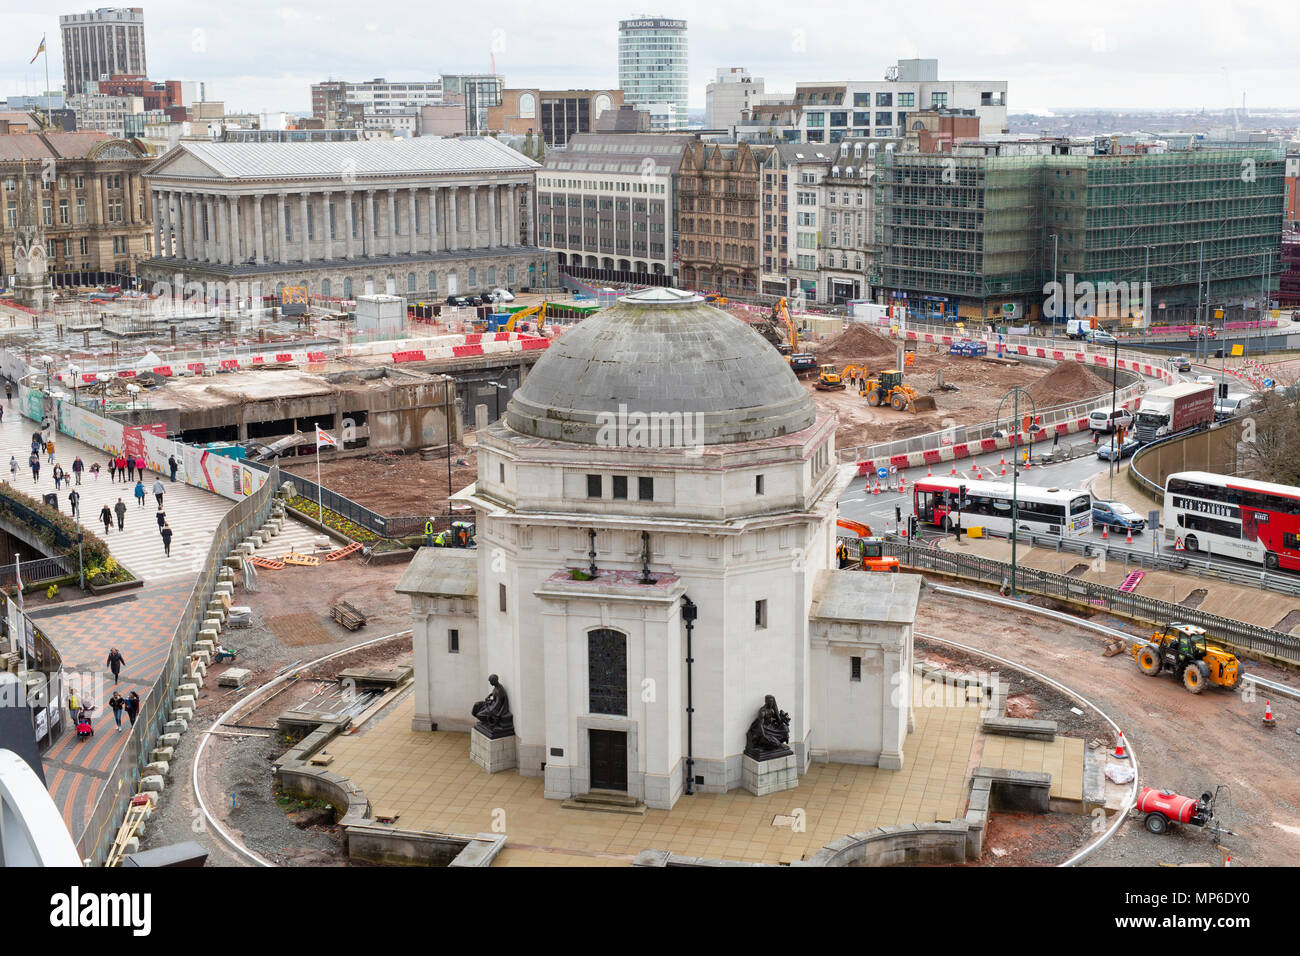 Les travaux de construction autour de la salle de la mémoire dans l'Centenary Square, Birmingham. La vue est à partir de la Bibliothèque de Birmingham. Banque D'Images